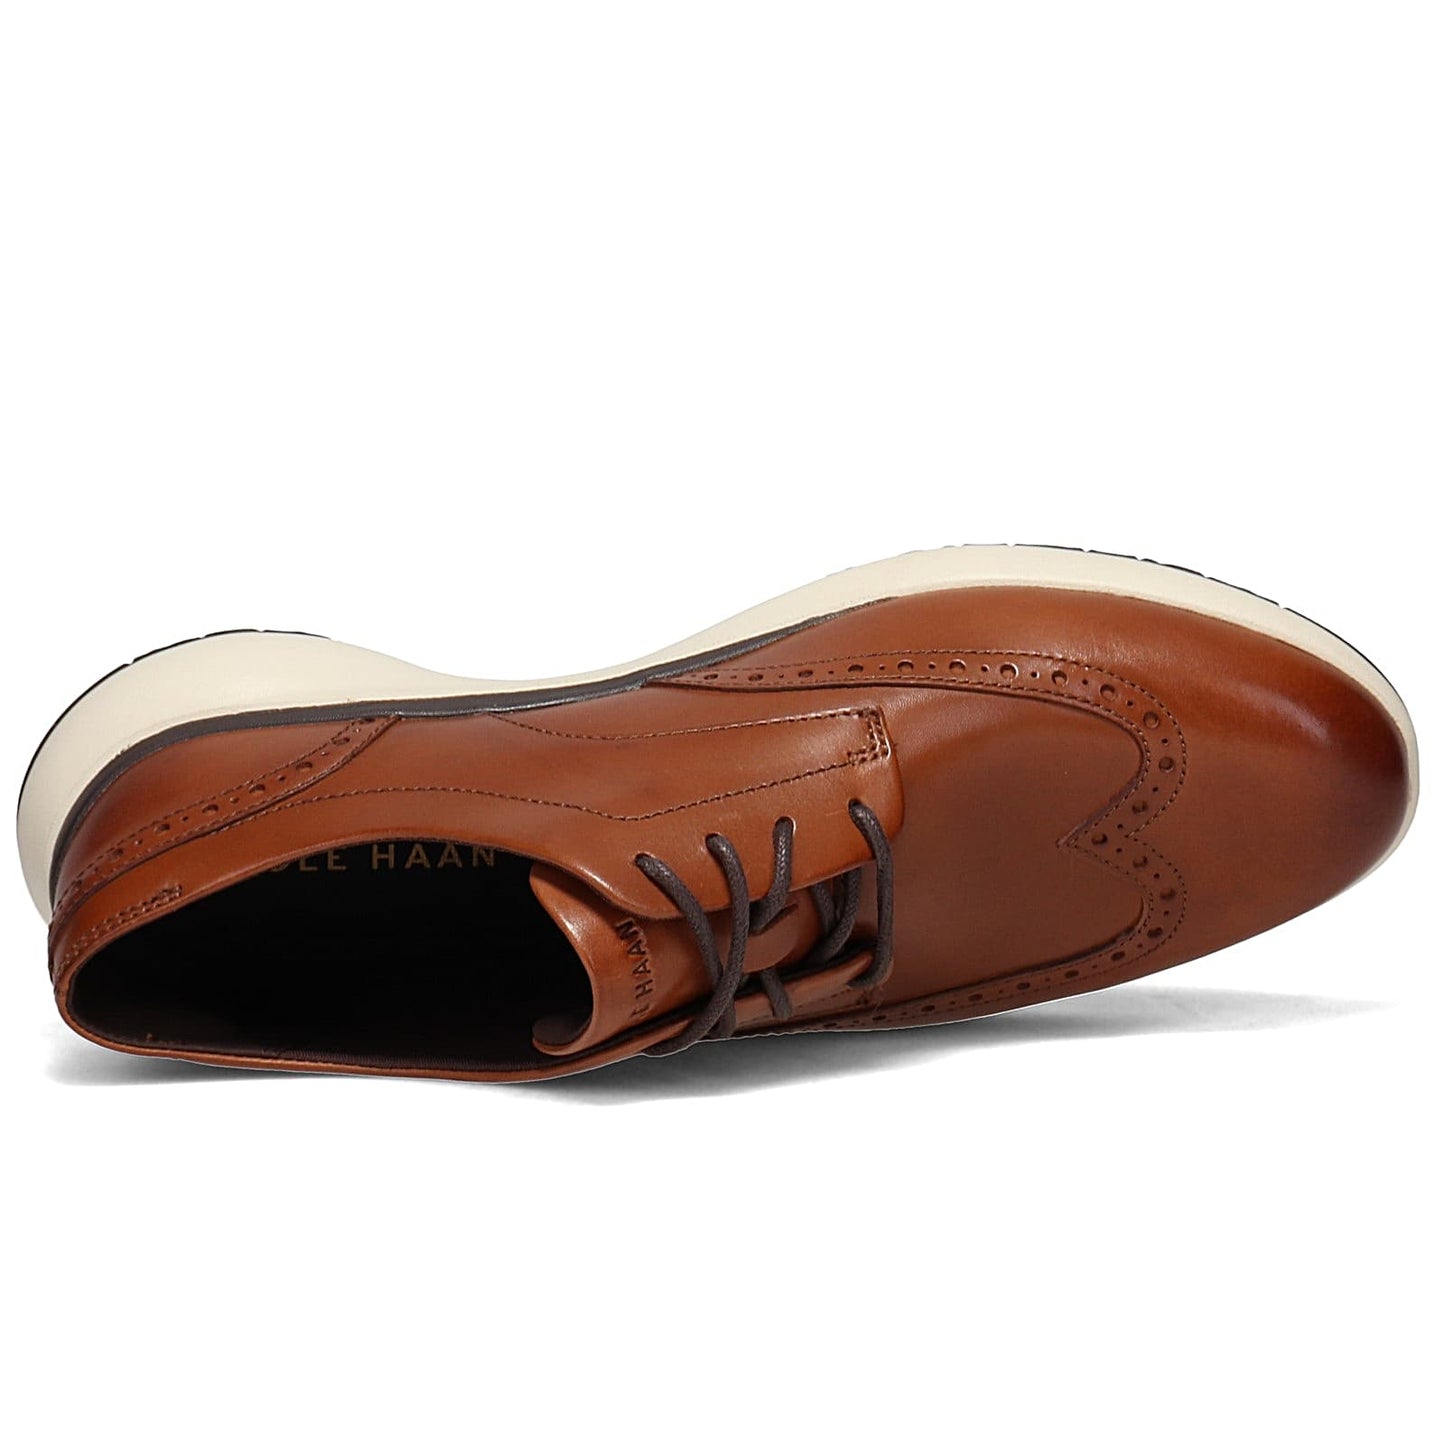 Peltz Shoes  Men's Cole Haan Grand Troy Plain Toe Oxford